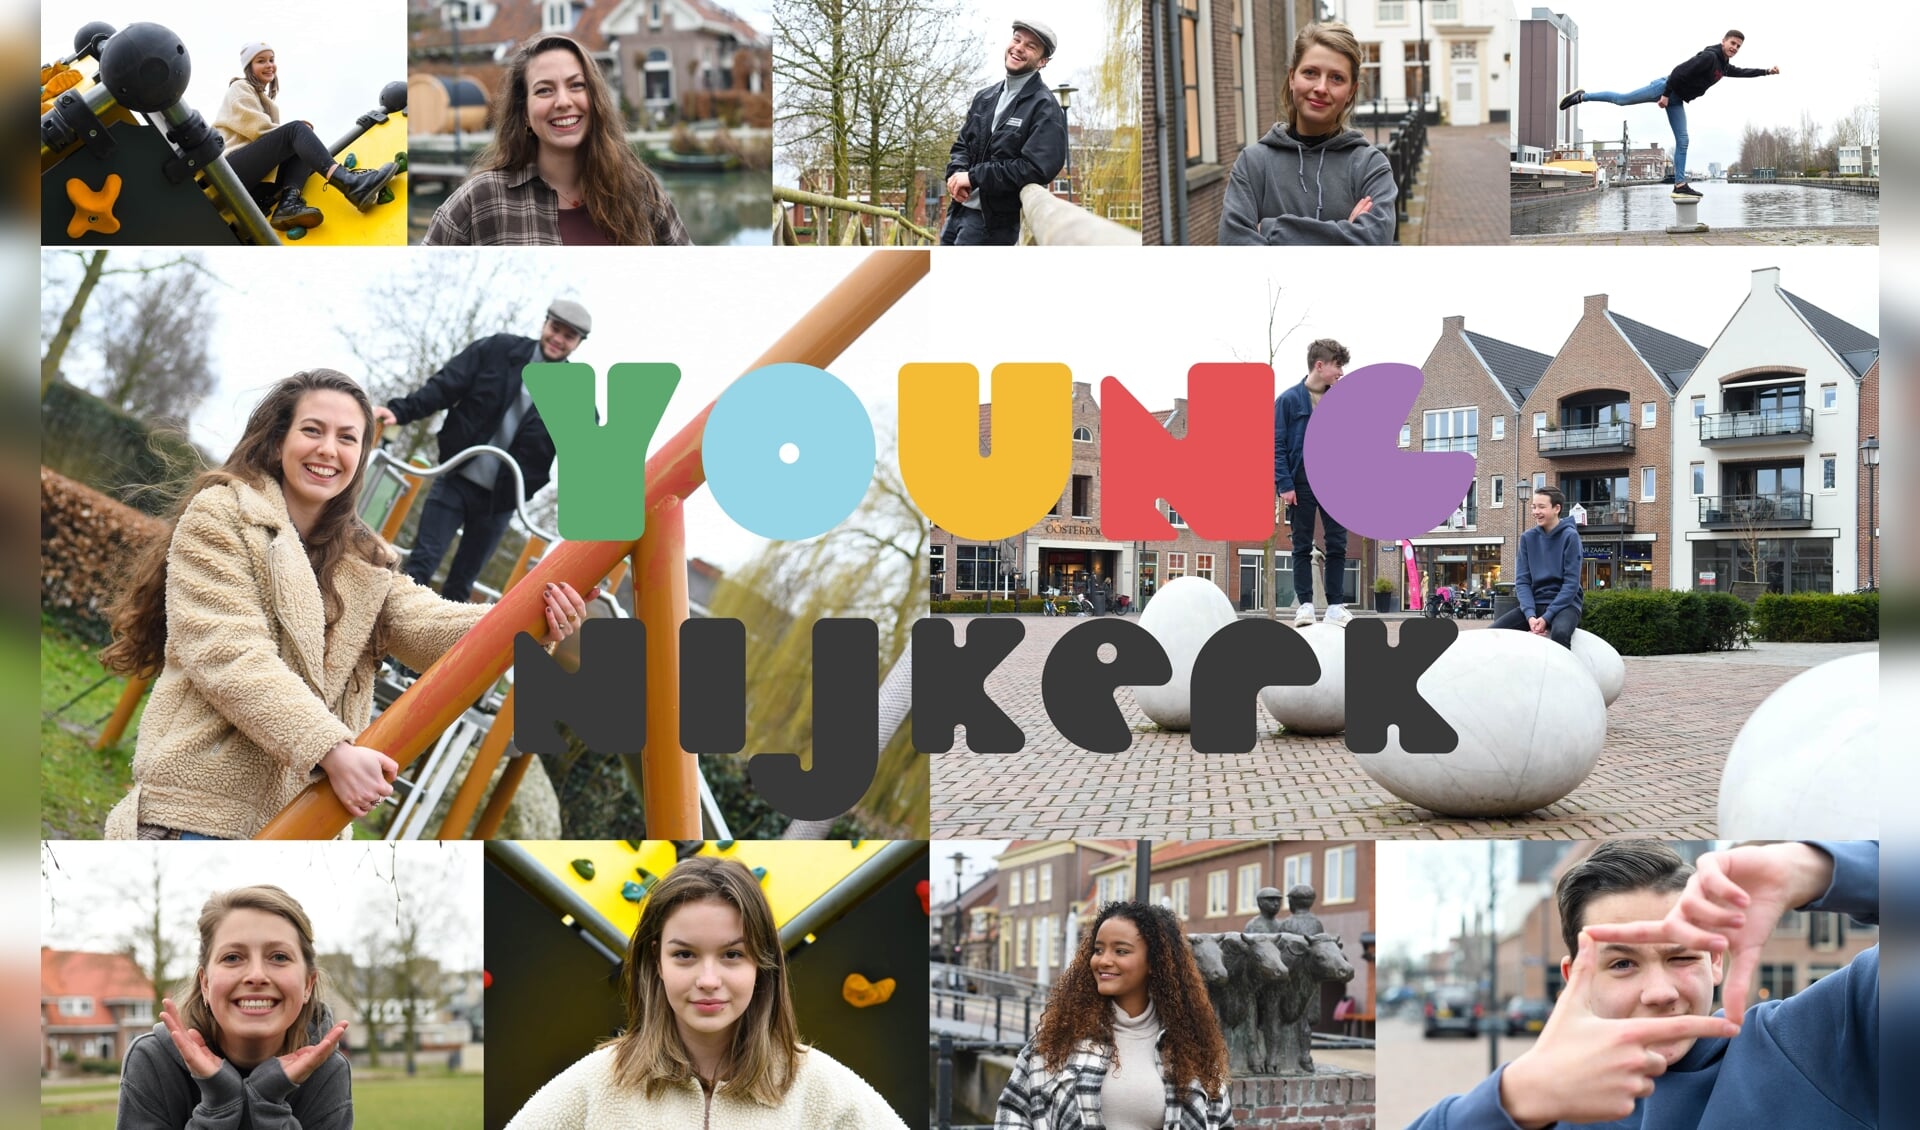 De website www.youngnijkerk.nl heeft extra aandacht voor jongeren en gaat entertainment en vermaak bieden in de breedste zin. 